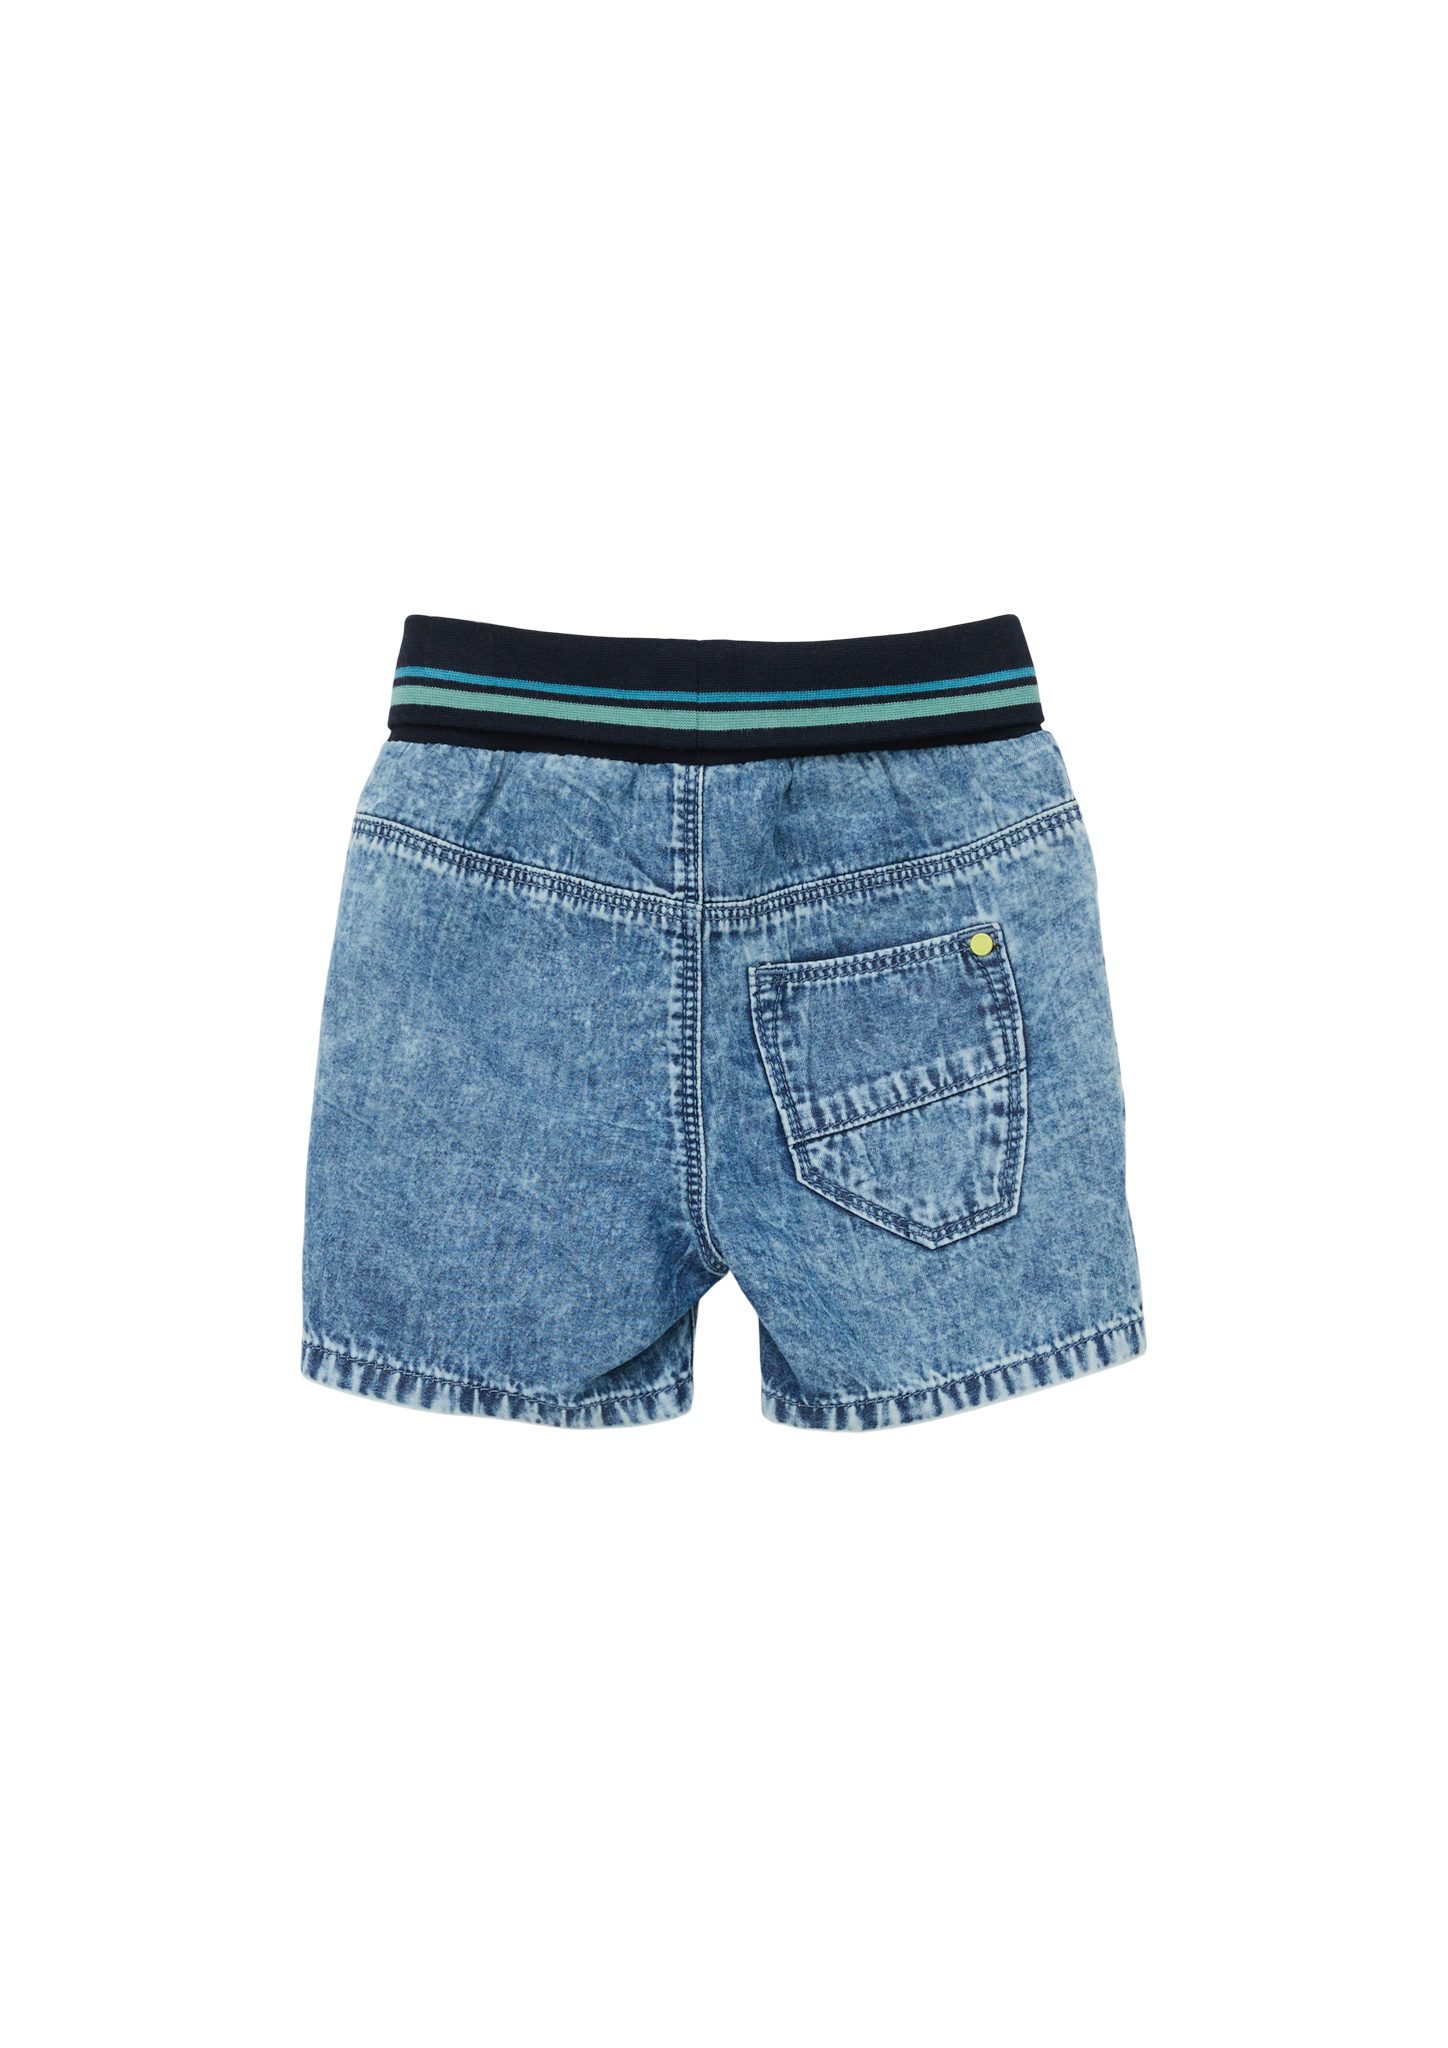 s.Oliver Shorts Leg / Jeans-Shorts Kontrast-Details Rise High Fit Regular / / Straight